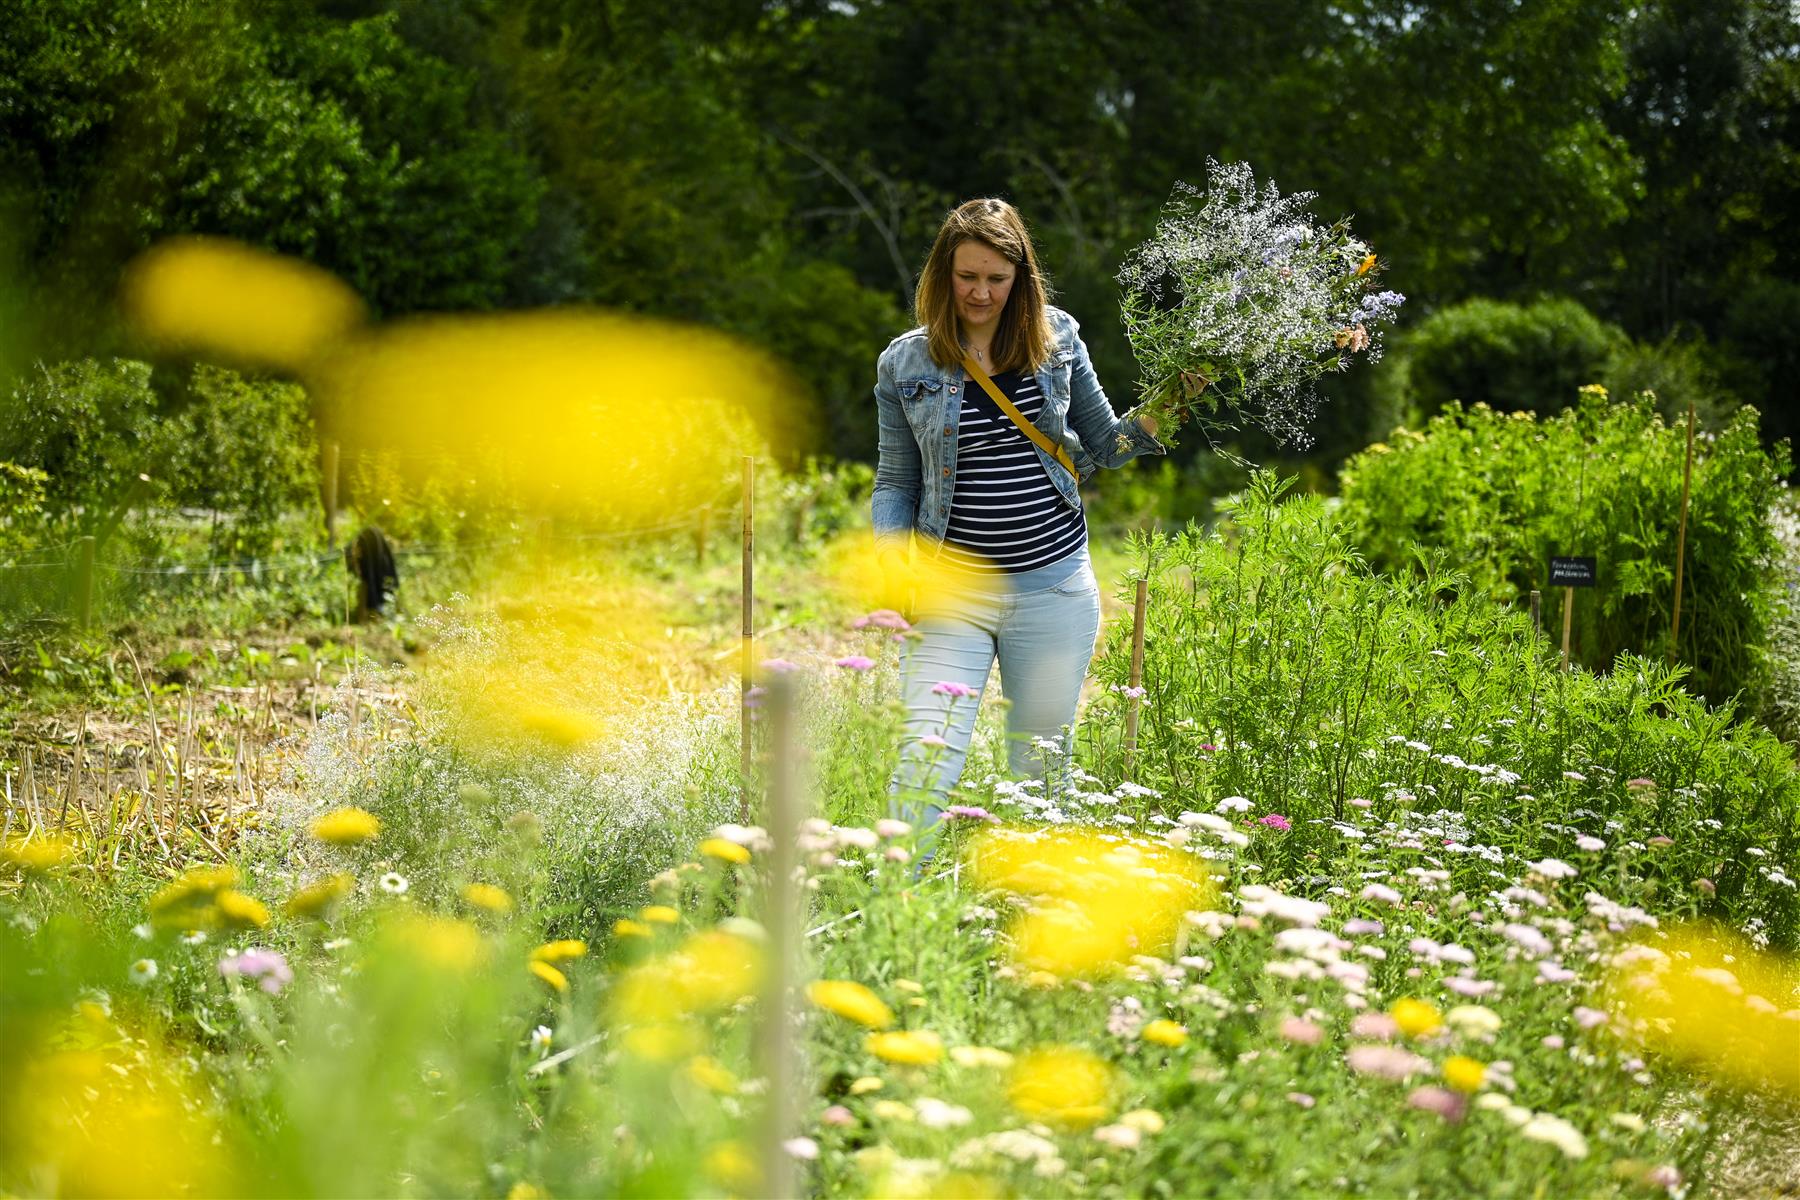 FleurAkker is de zelfplukbloemenboerderij van Groot Eiland